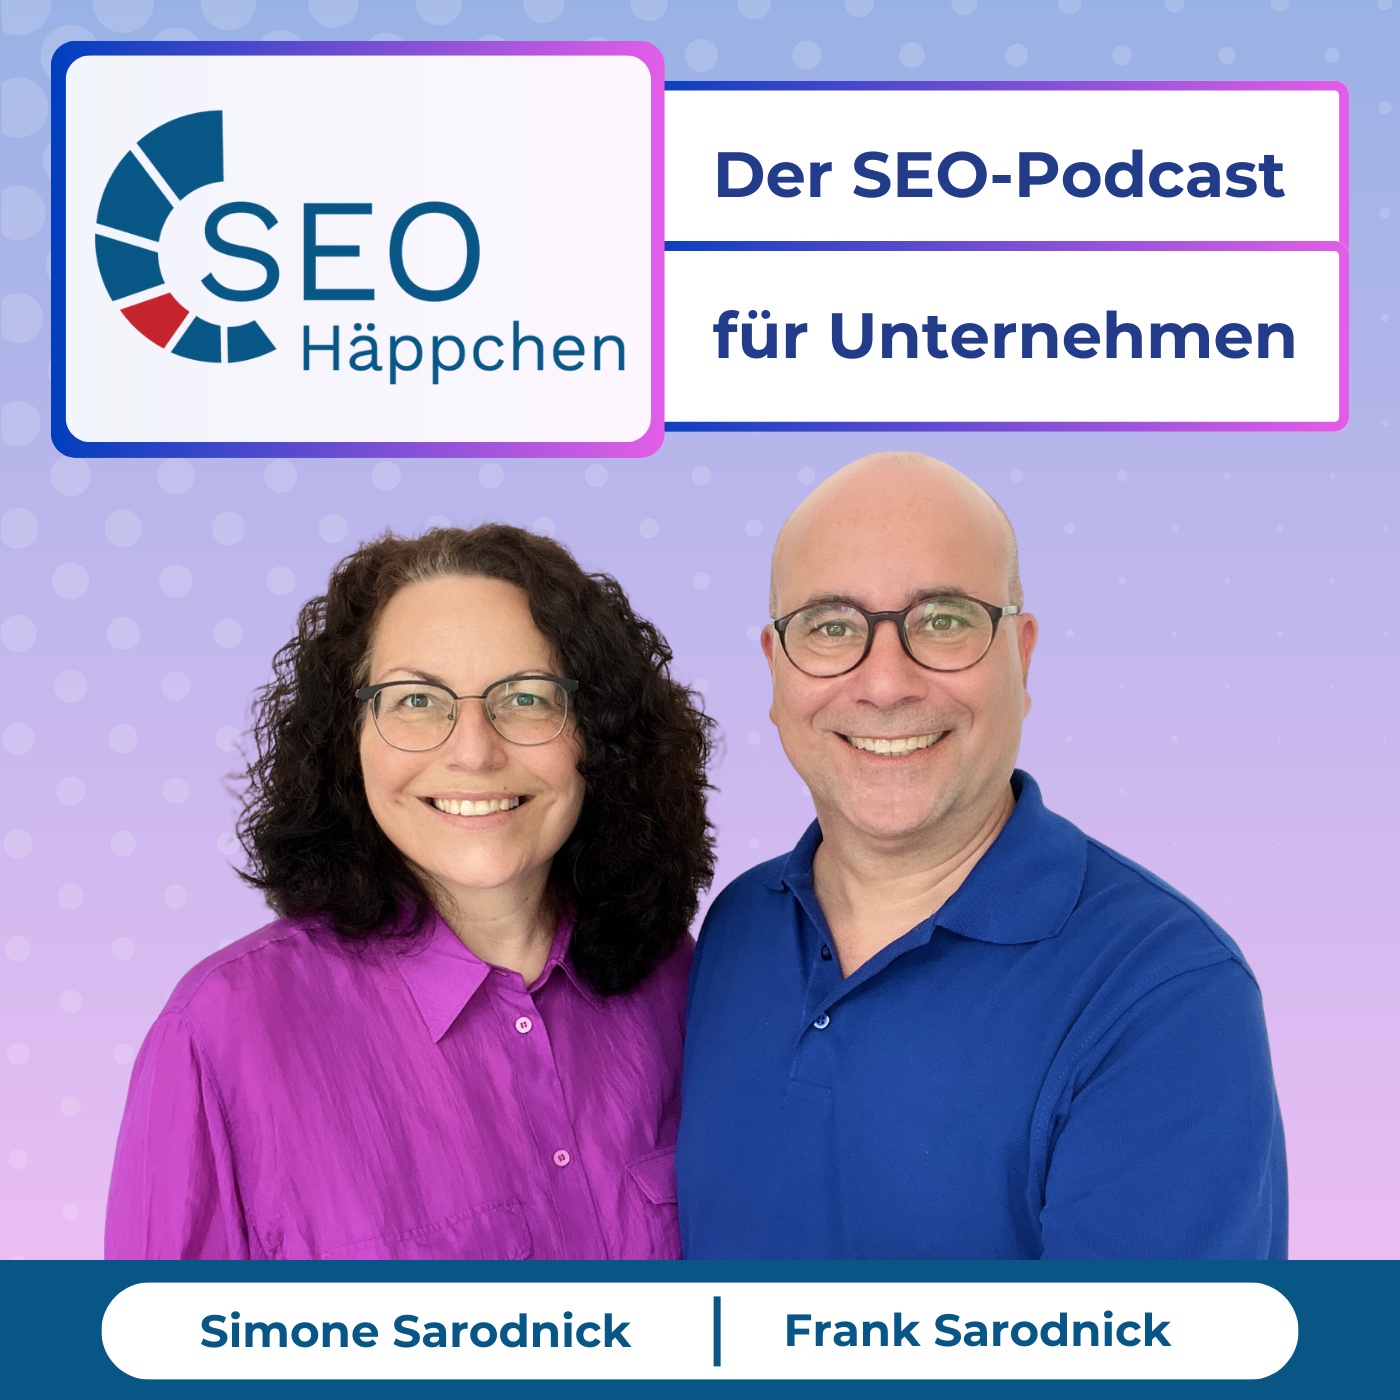 SEO Häppchen - Der SEO-Podcast für Unternehmen